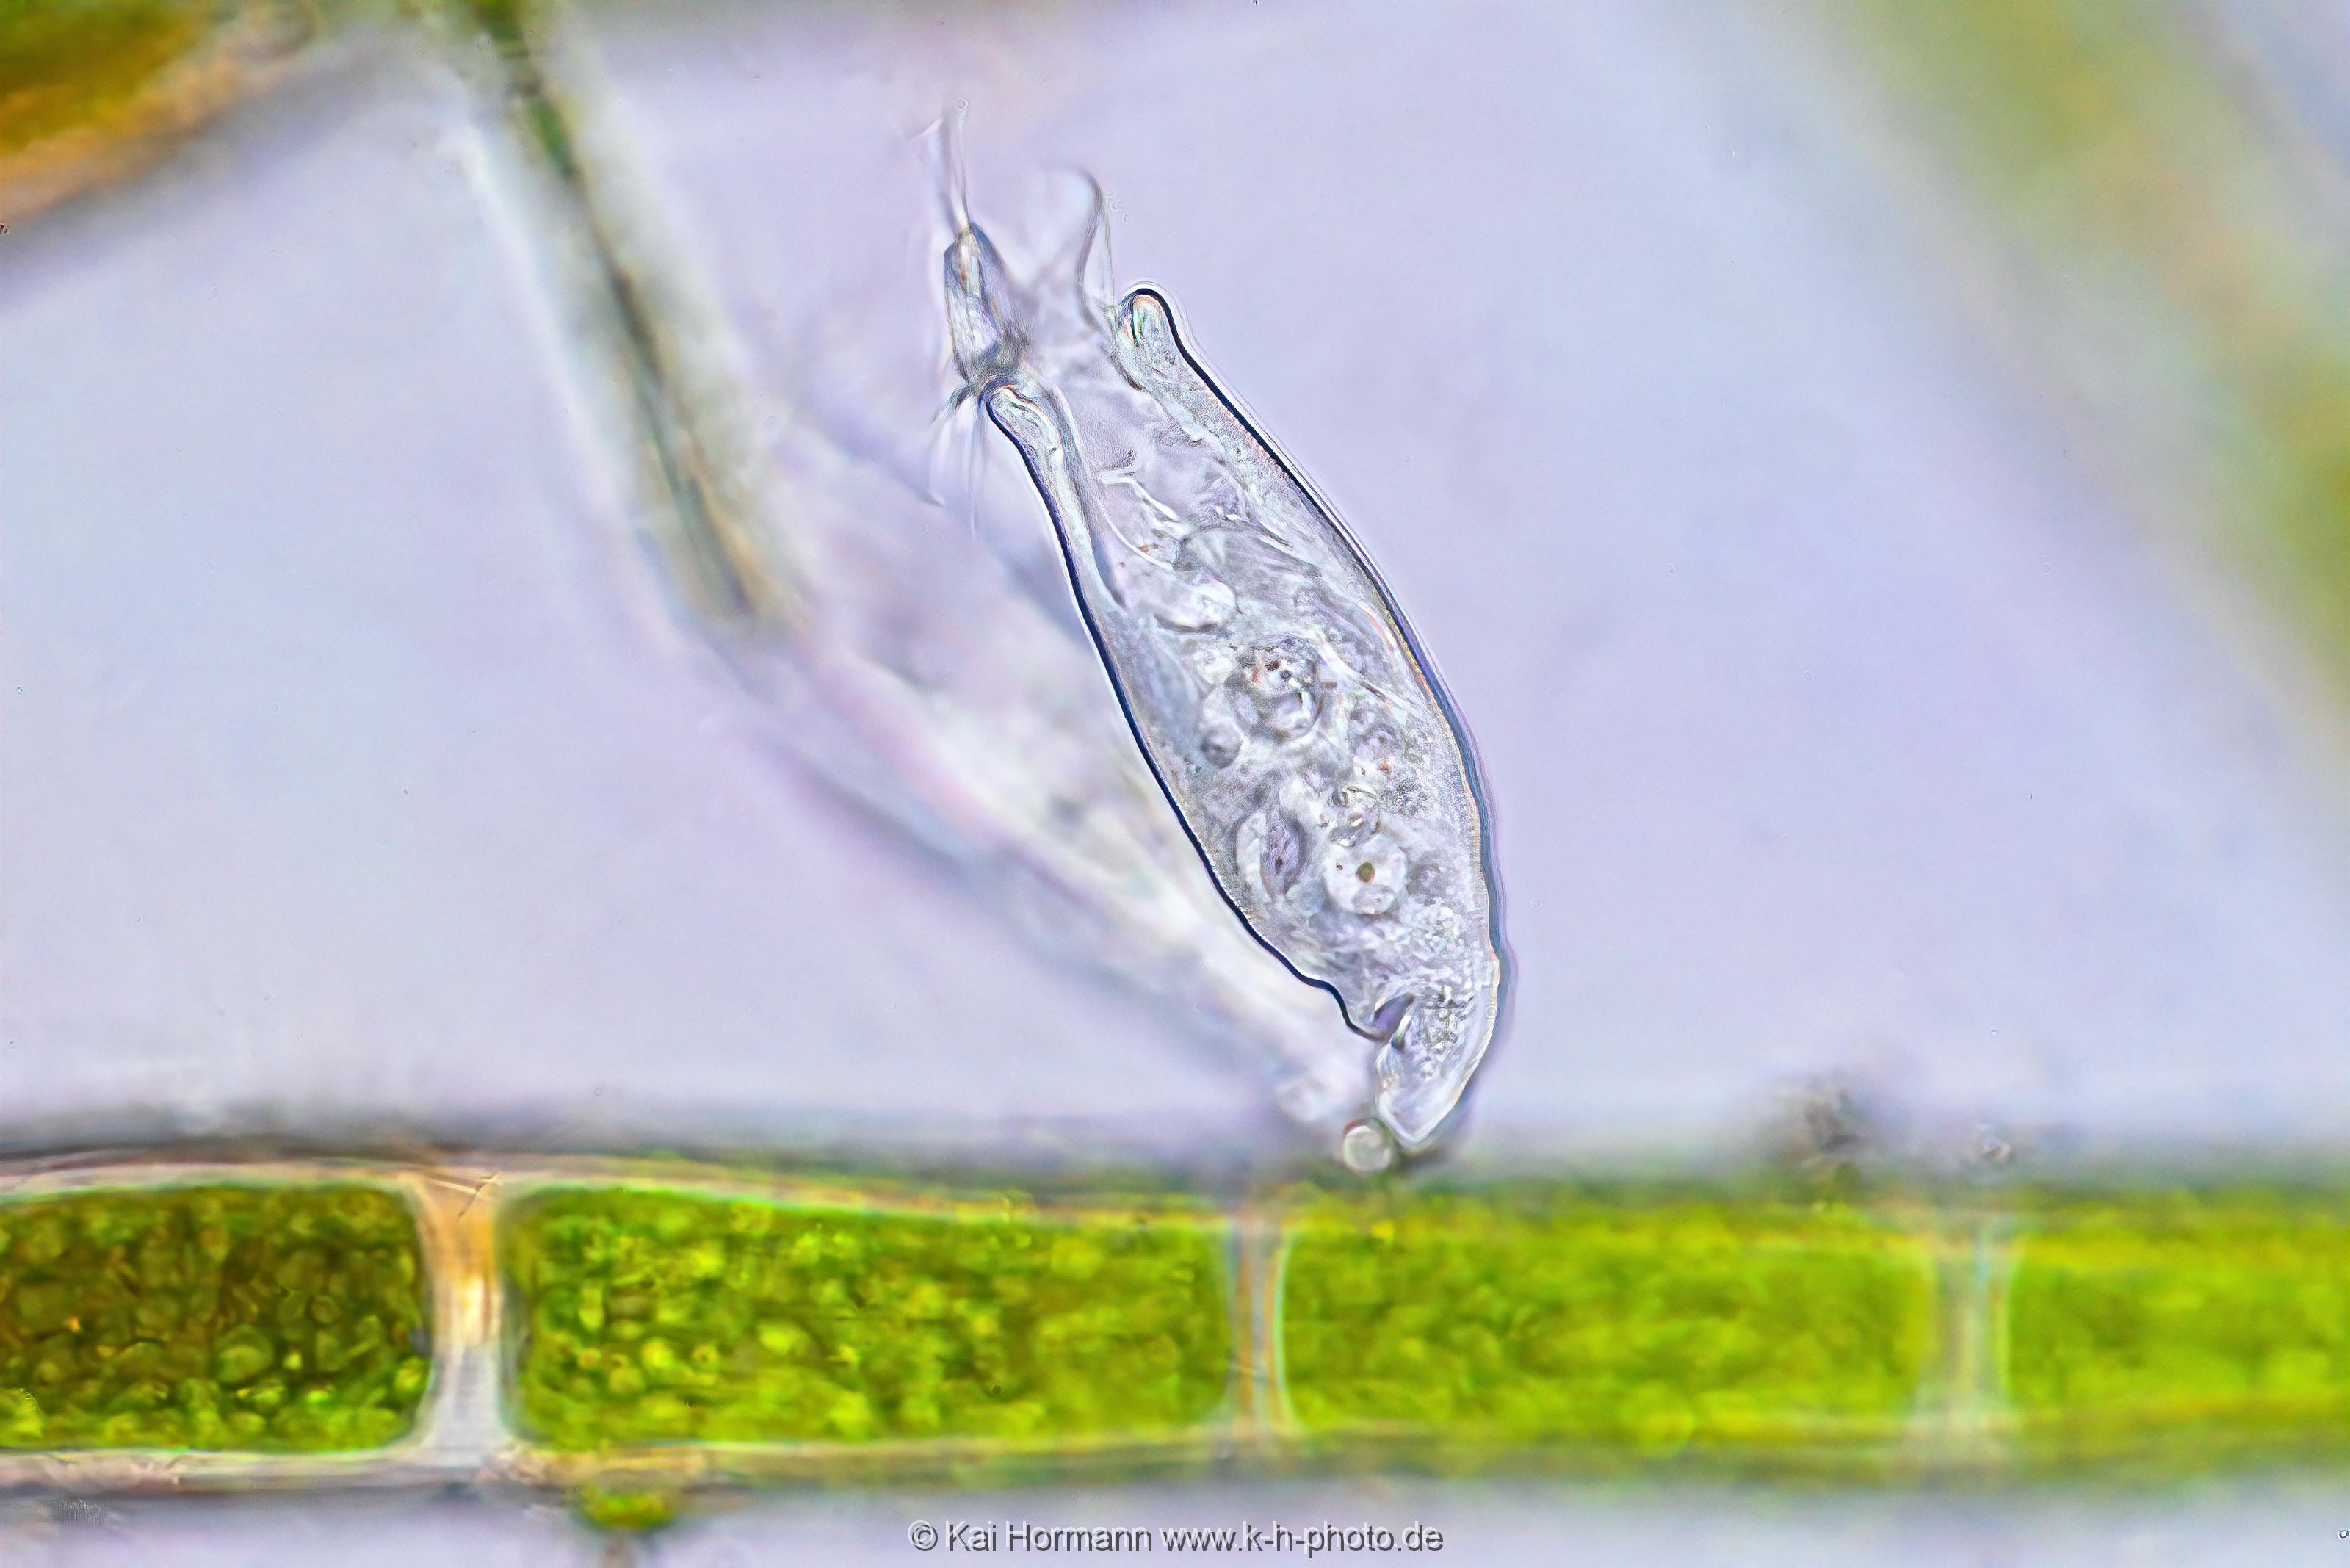 Scyphidia Rugosa. Mikrofotografie: Mikroskopische Aufnahmen von Einzellern, Algen und Kleinstlebewesen.